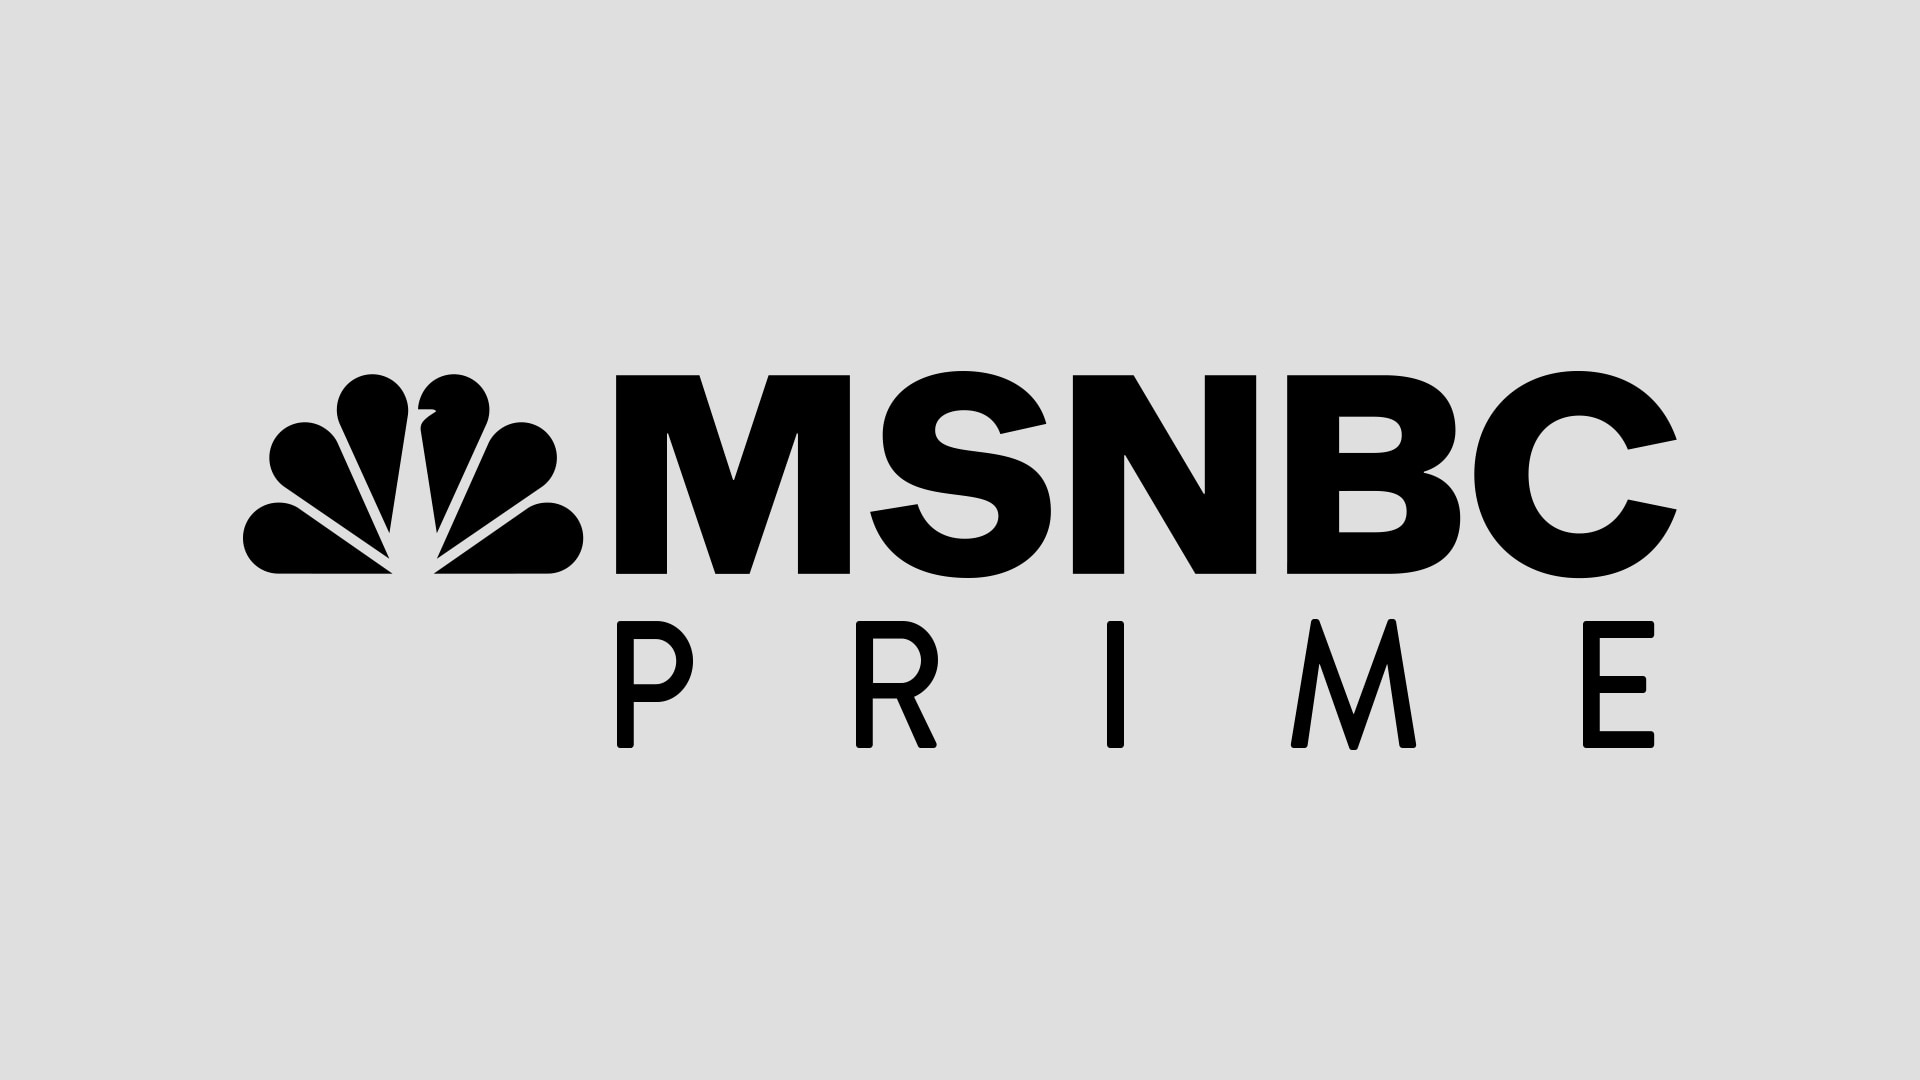 MSNBC Prime